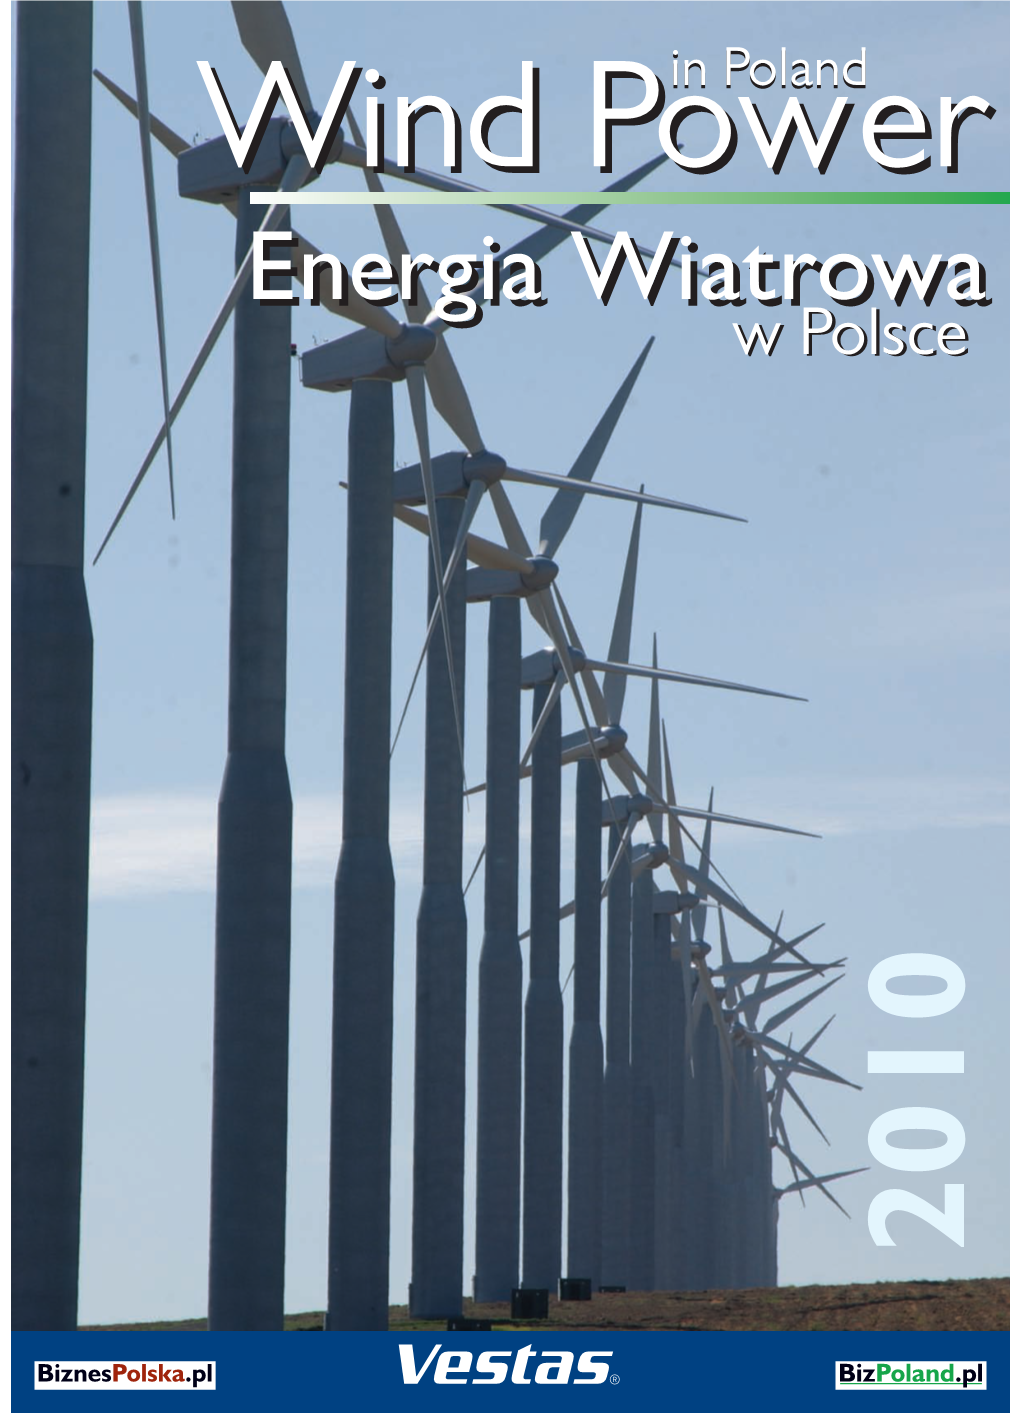 Energia Wiatrowa Energia Wiatrowa in Poland in Poland W Polsce W Polsce 2010